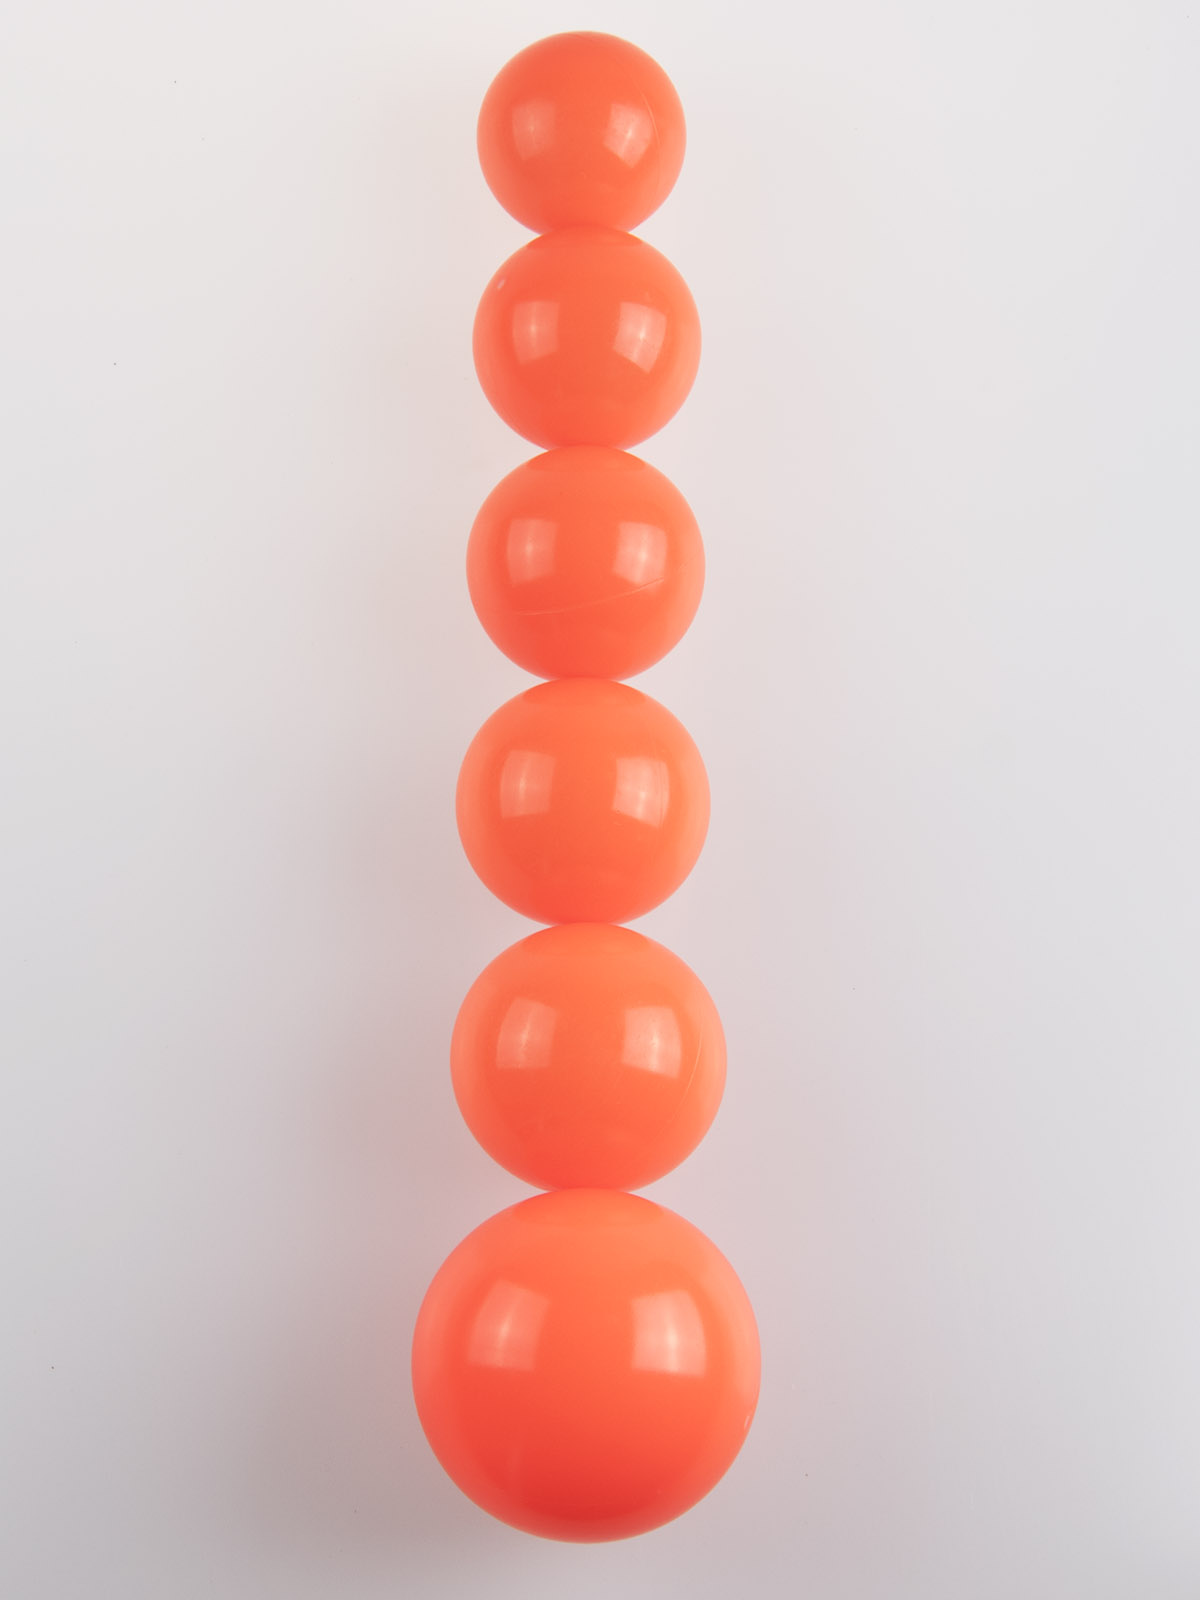 sizes of juggling balls